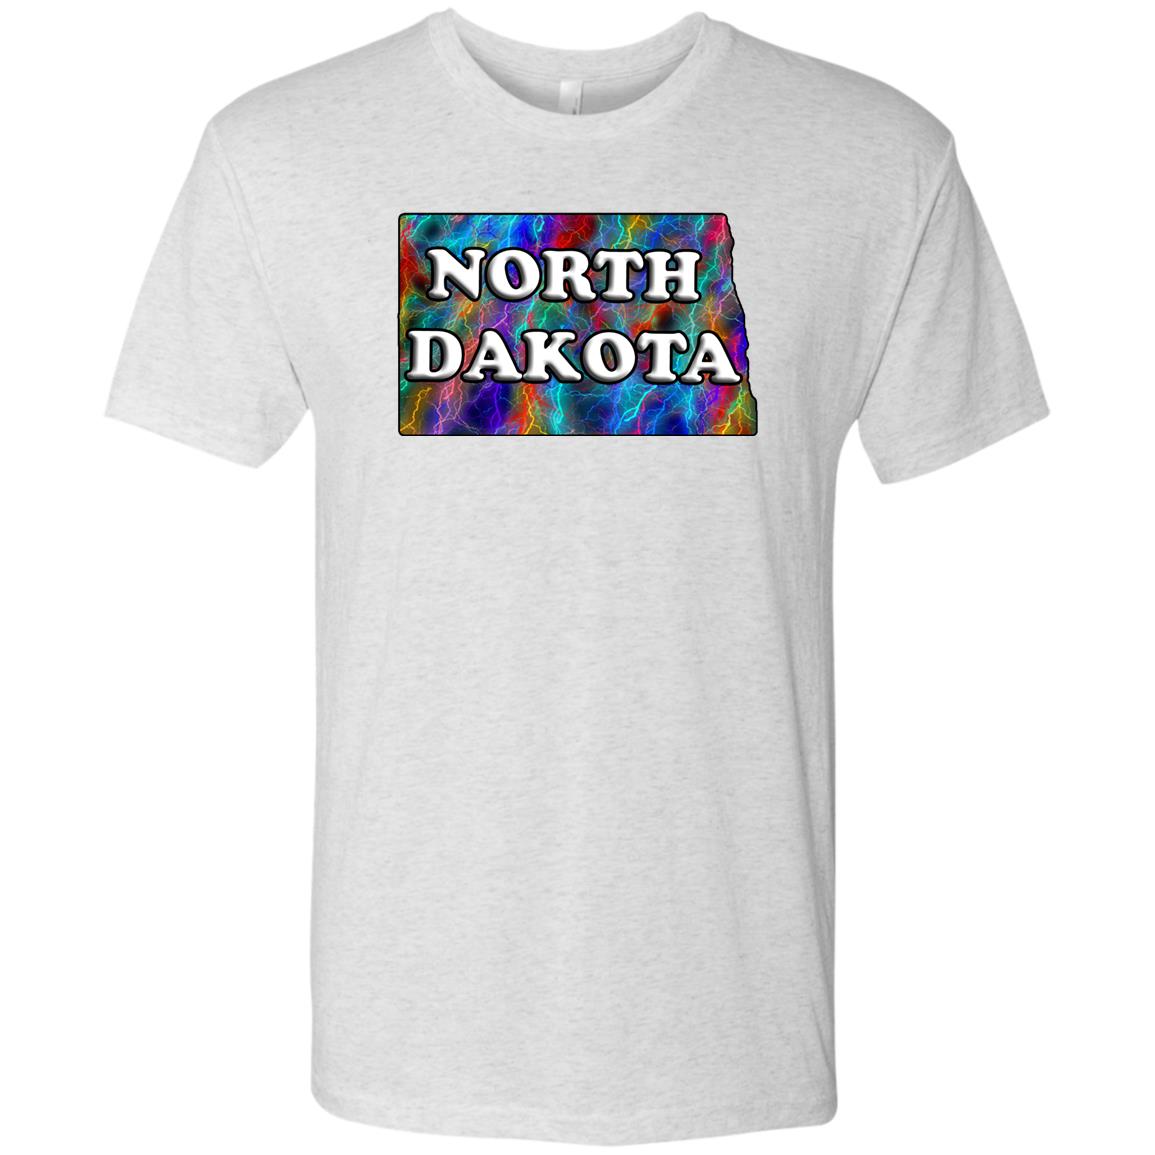 North Dakota State T-Shirt